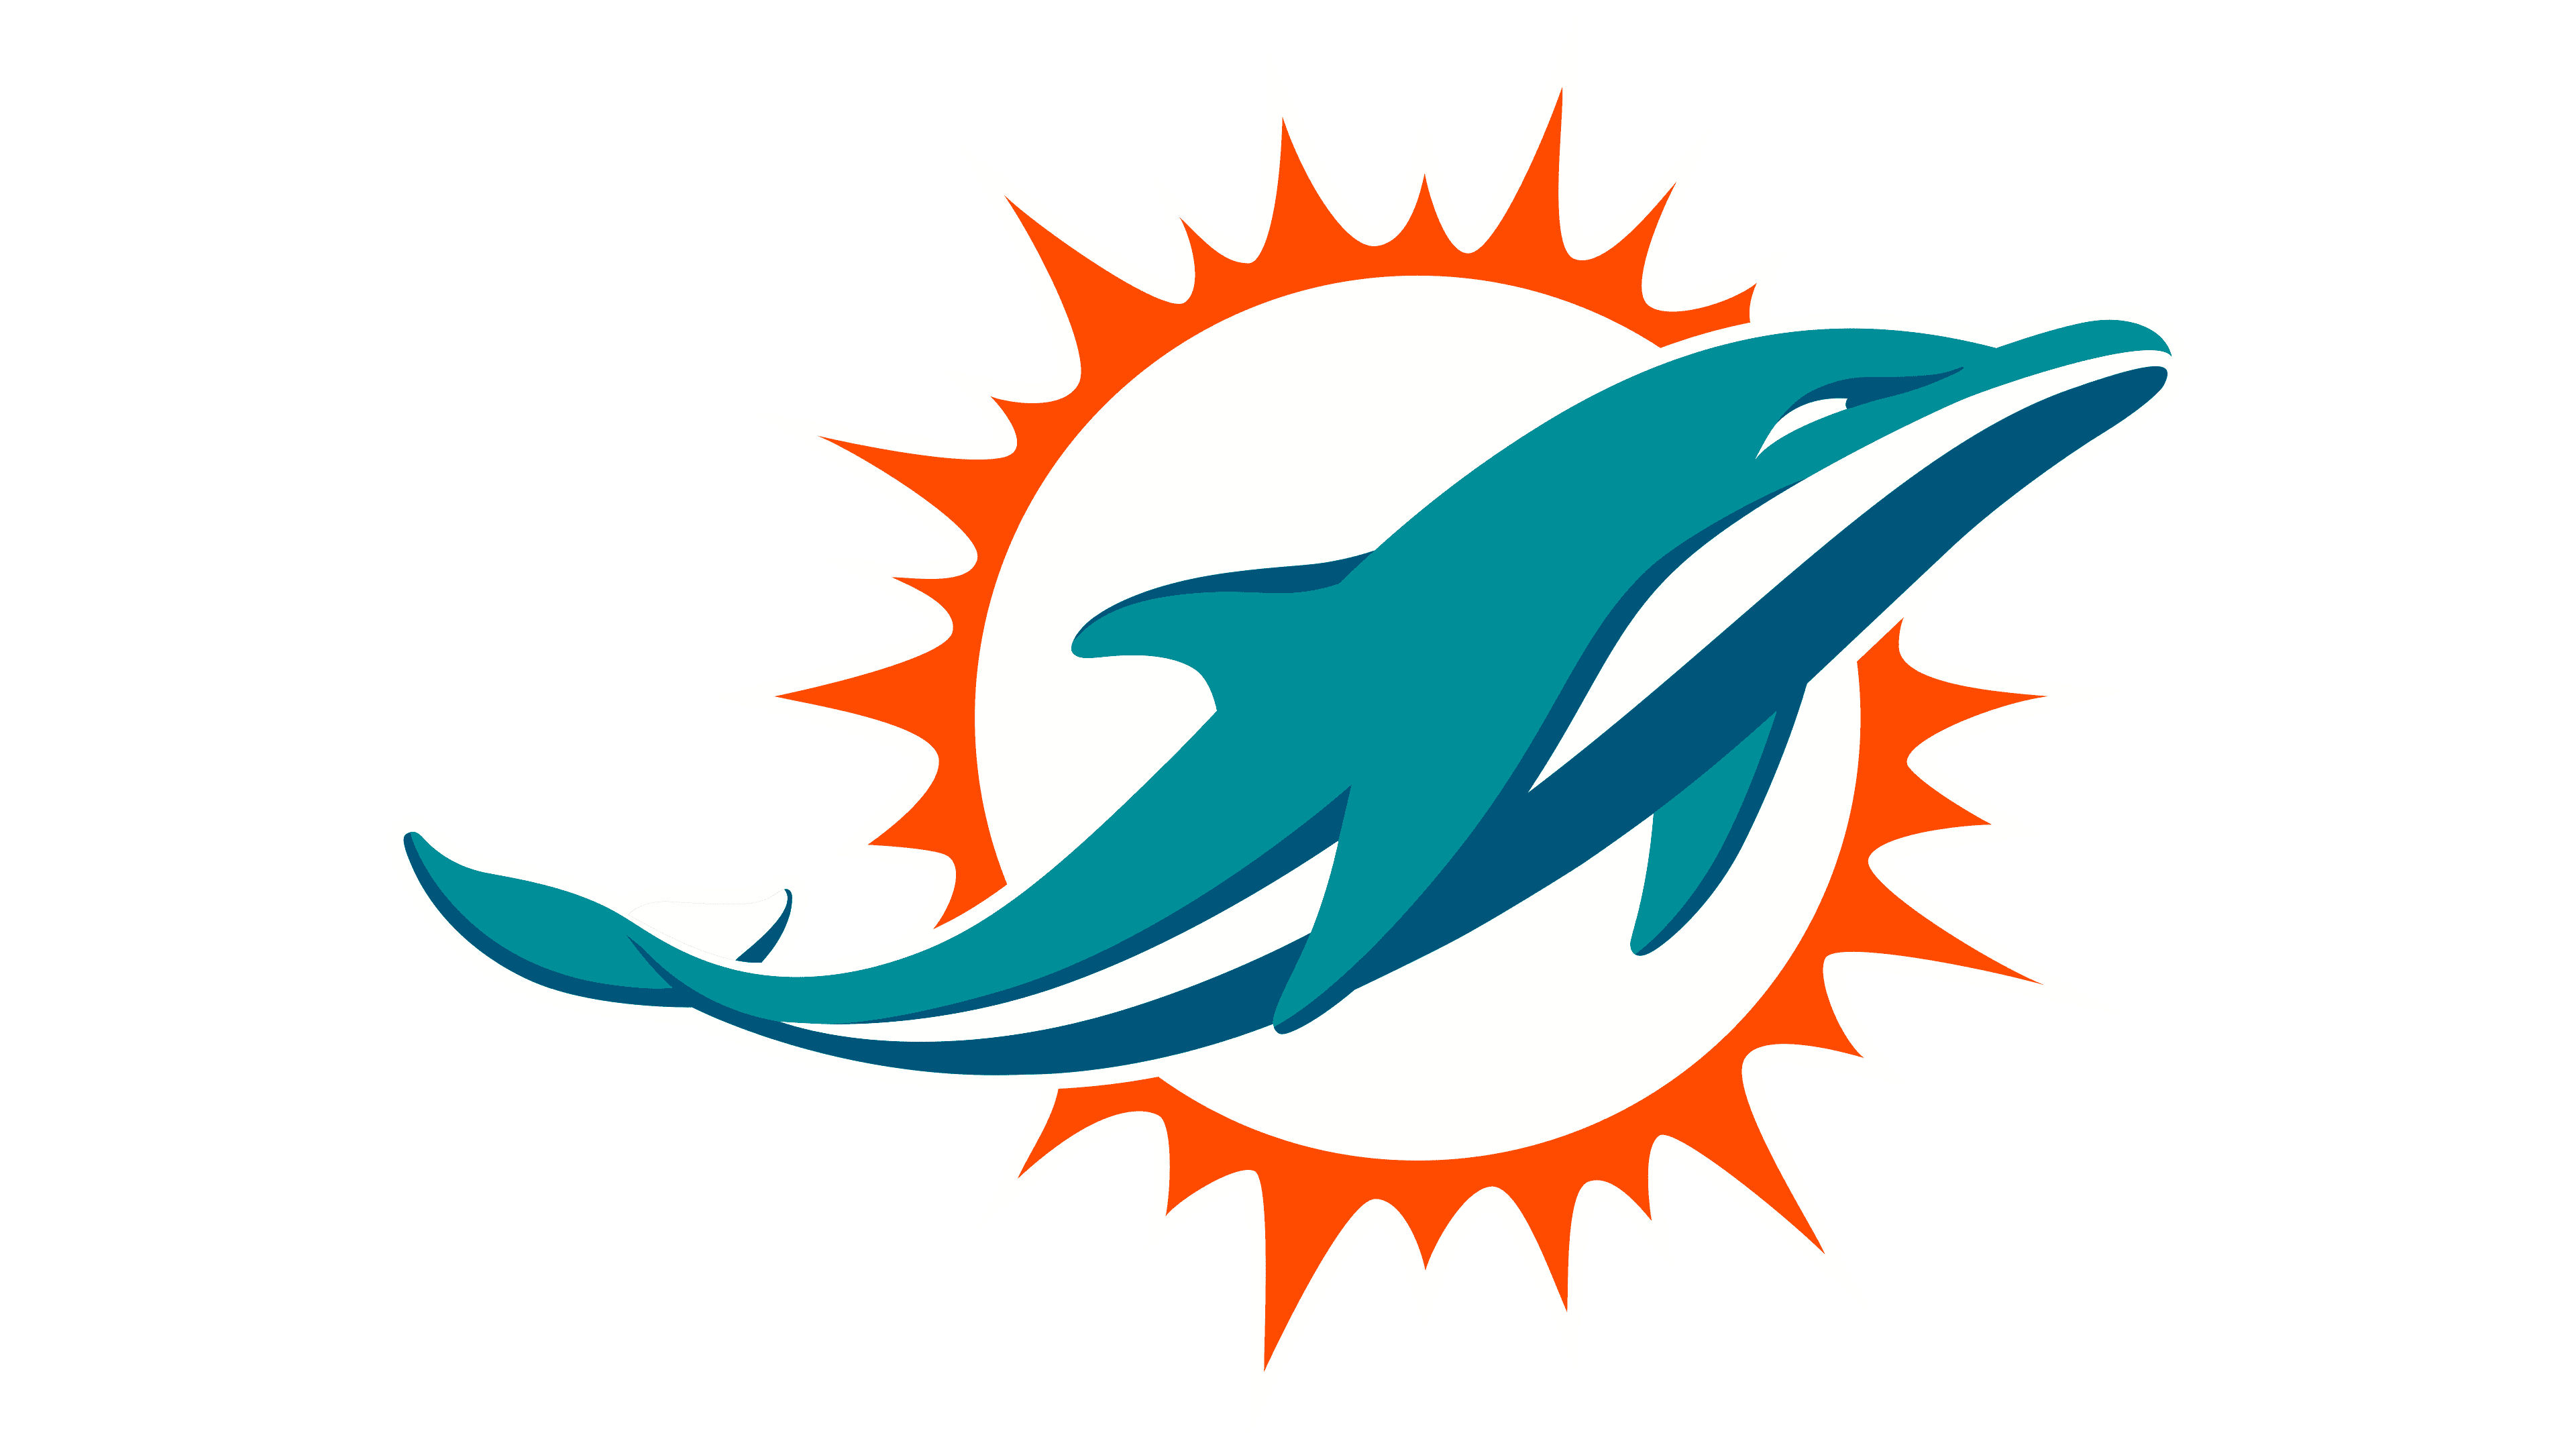 Miami dolphins logo